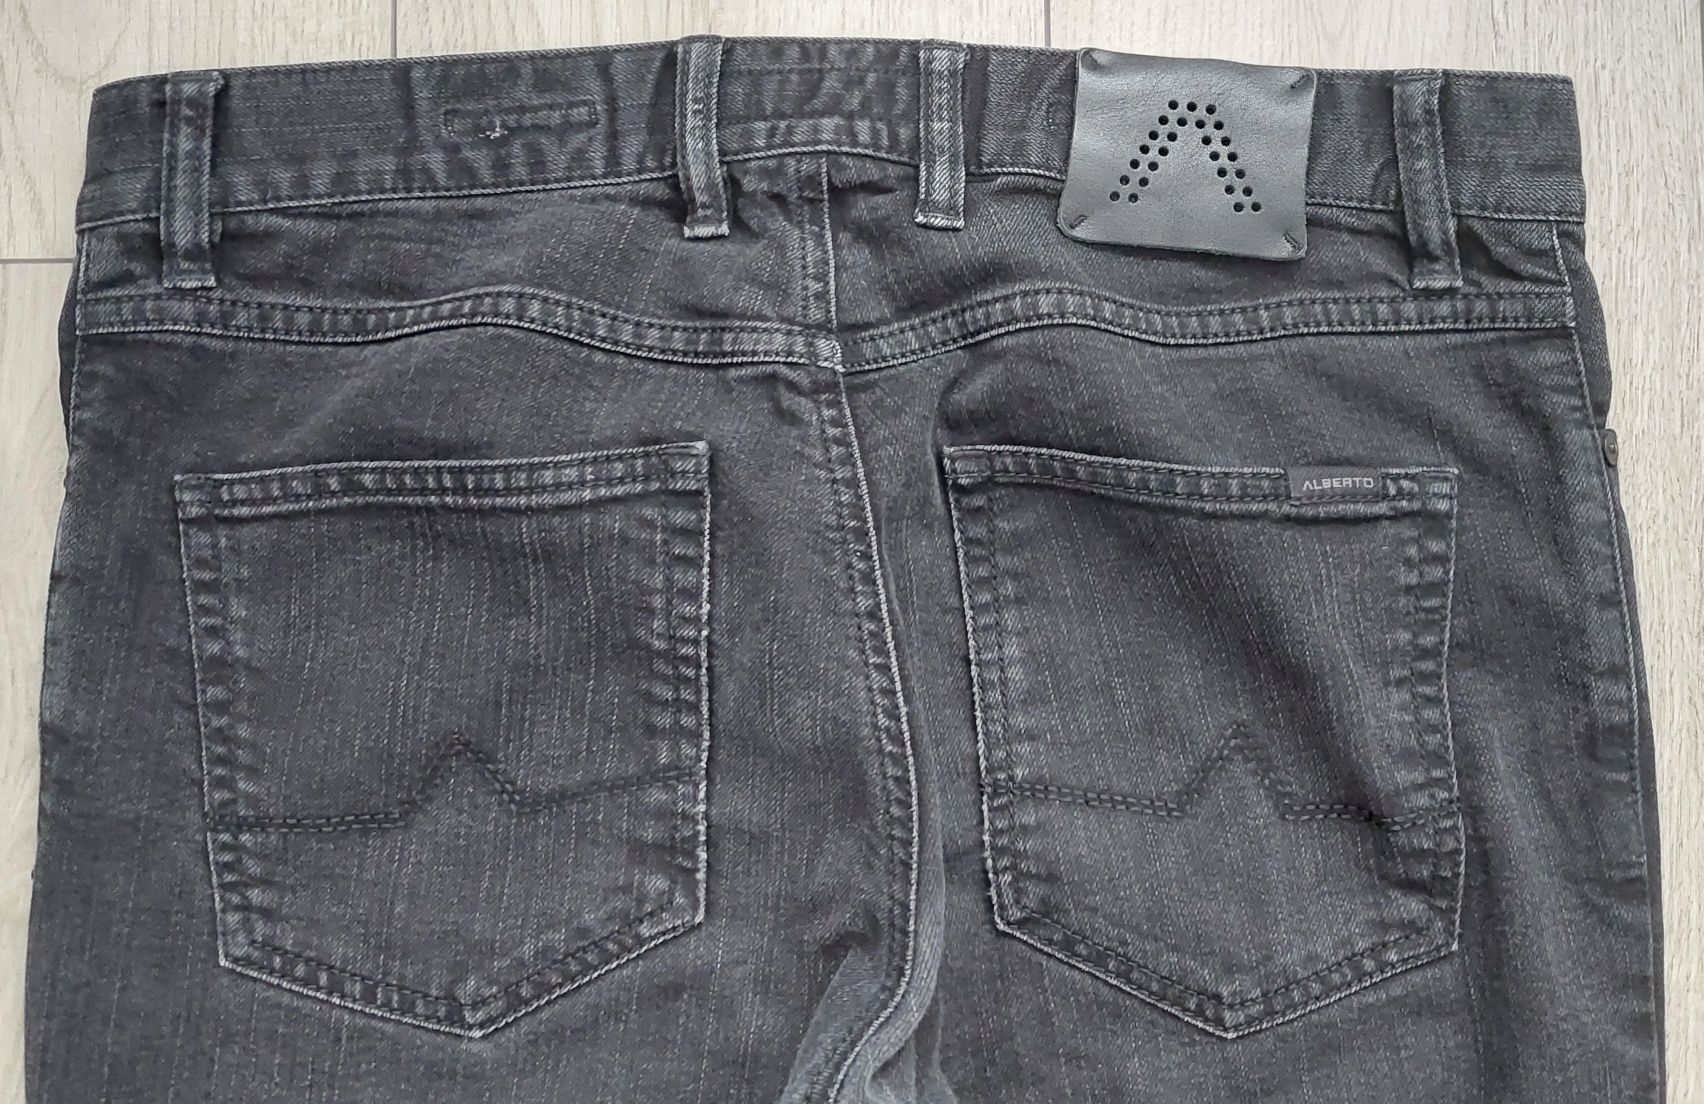 Spodnie Alberto Jeans Pipe T400 32x30 Regular SlimFit dżinsy biznesowe